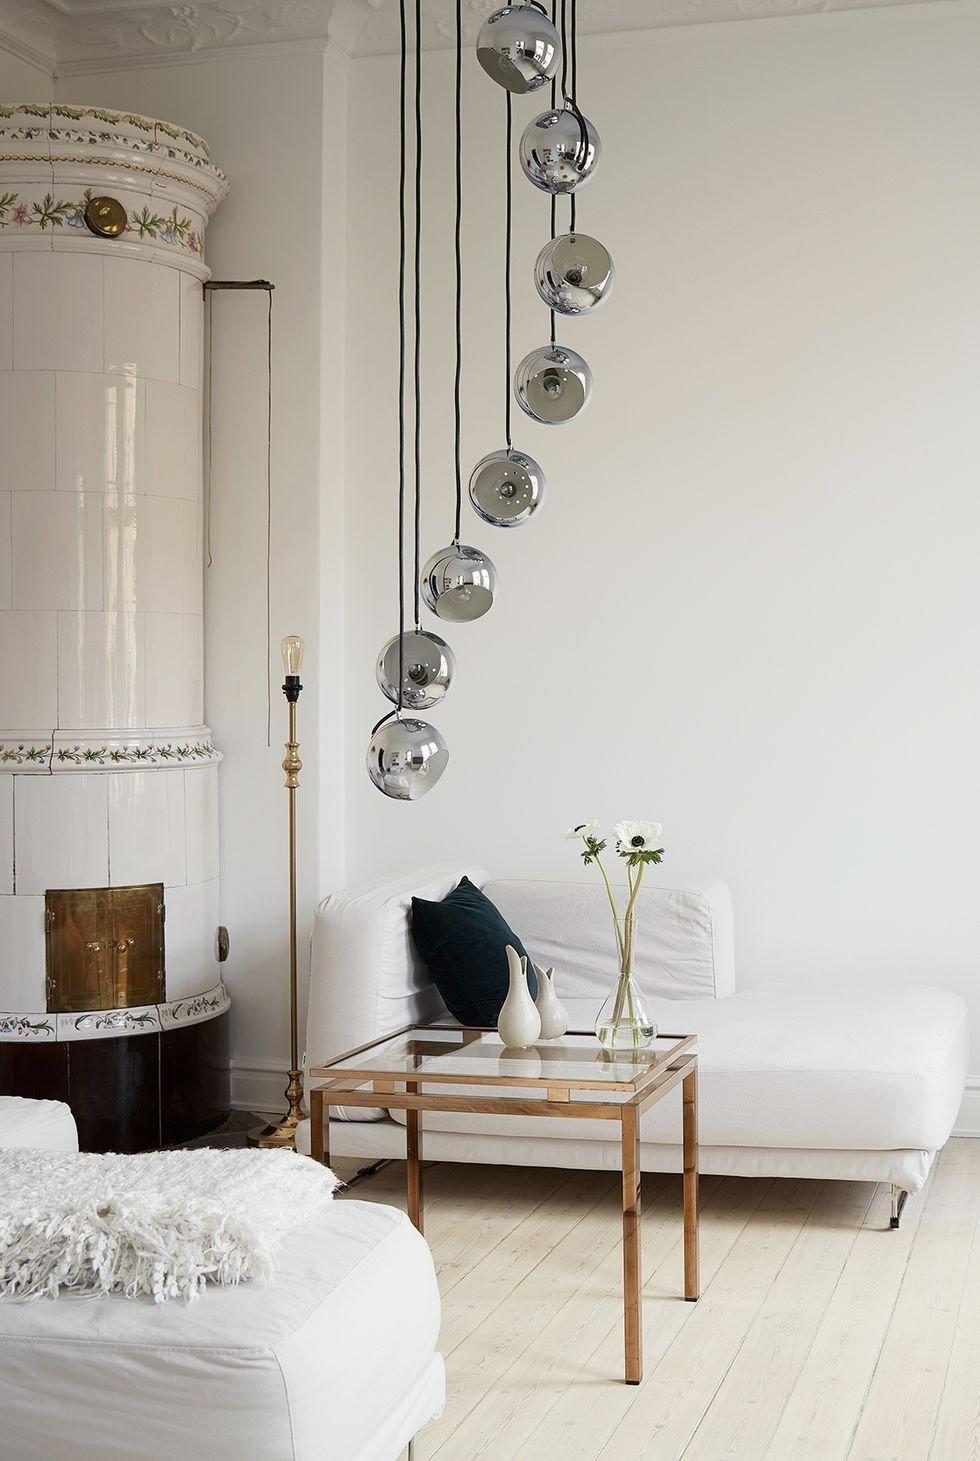 living-room-lighting-ideas-joakim-johansson-minimalist-living-room-1554399634.jpg